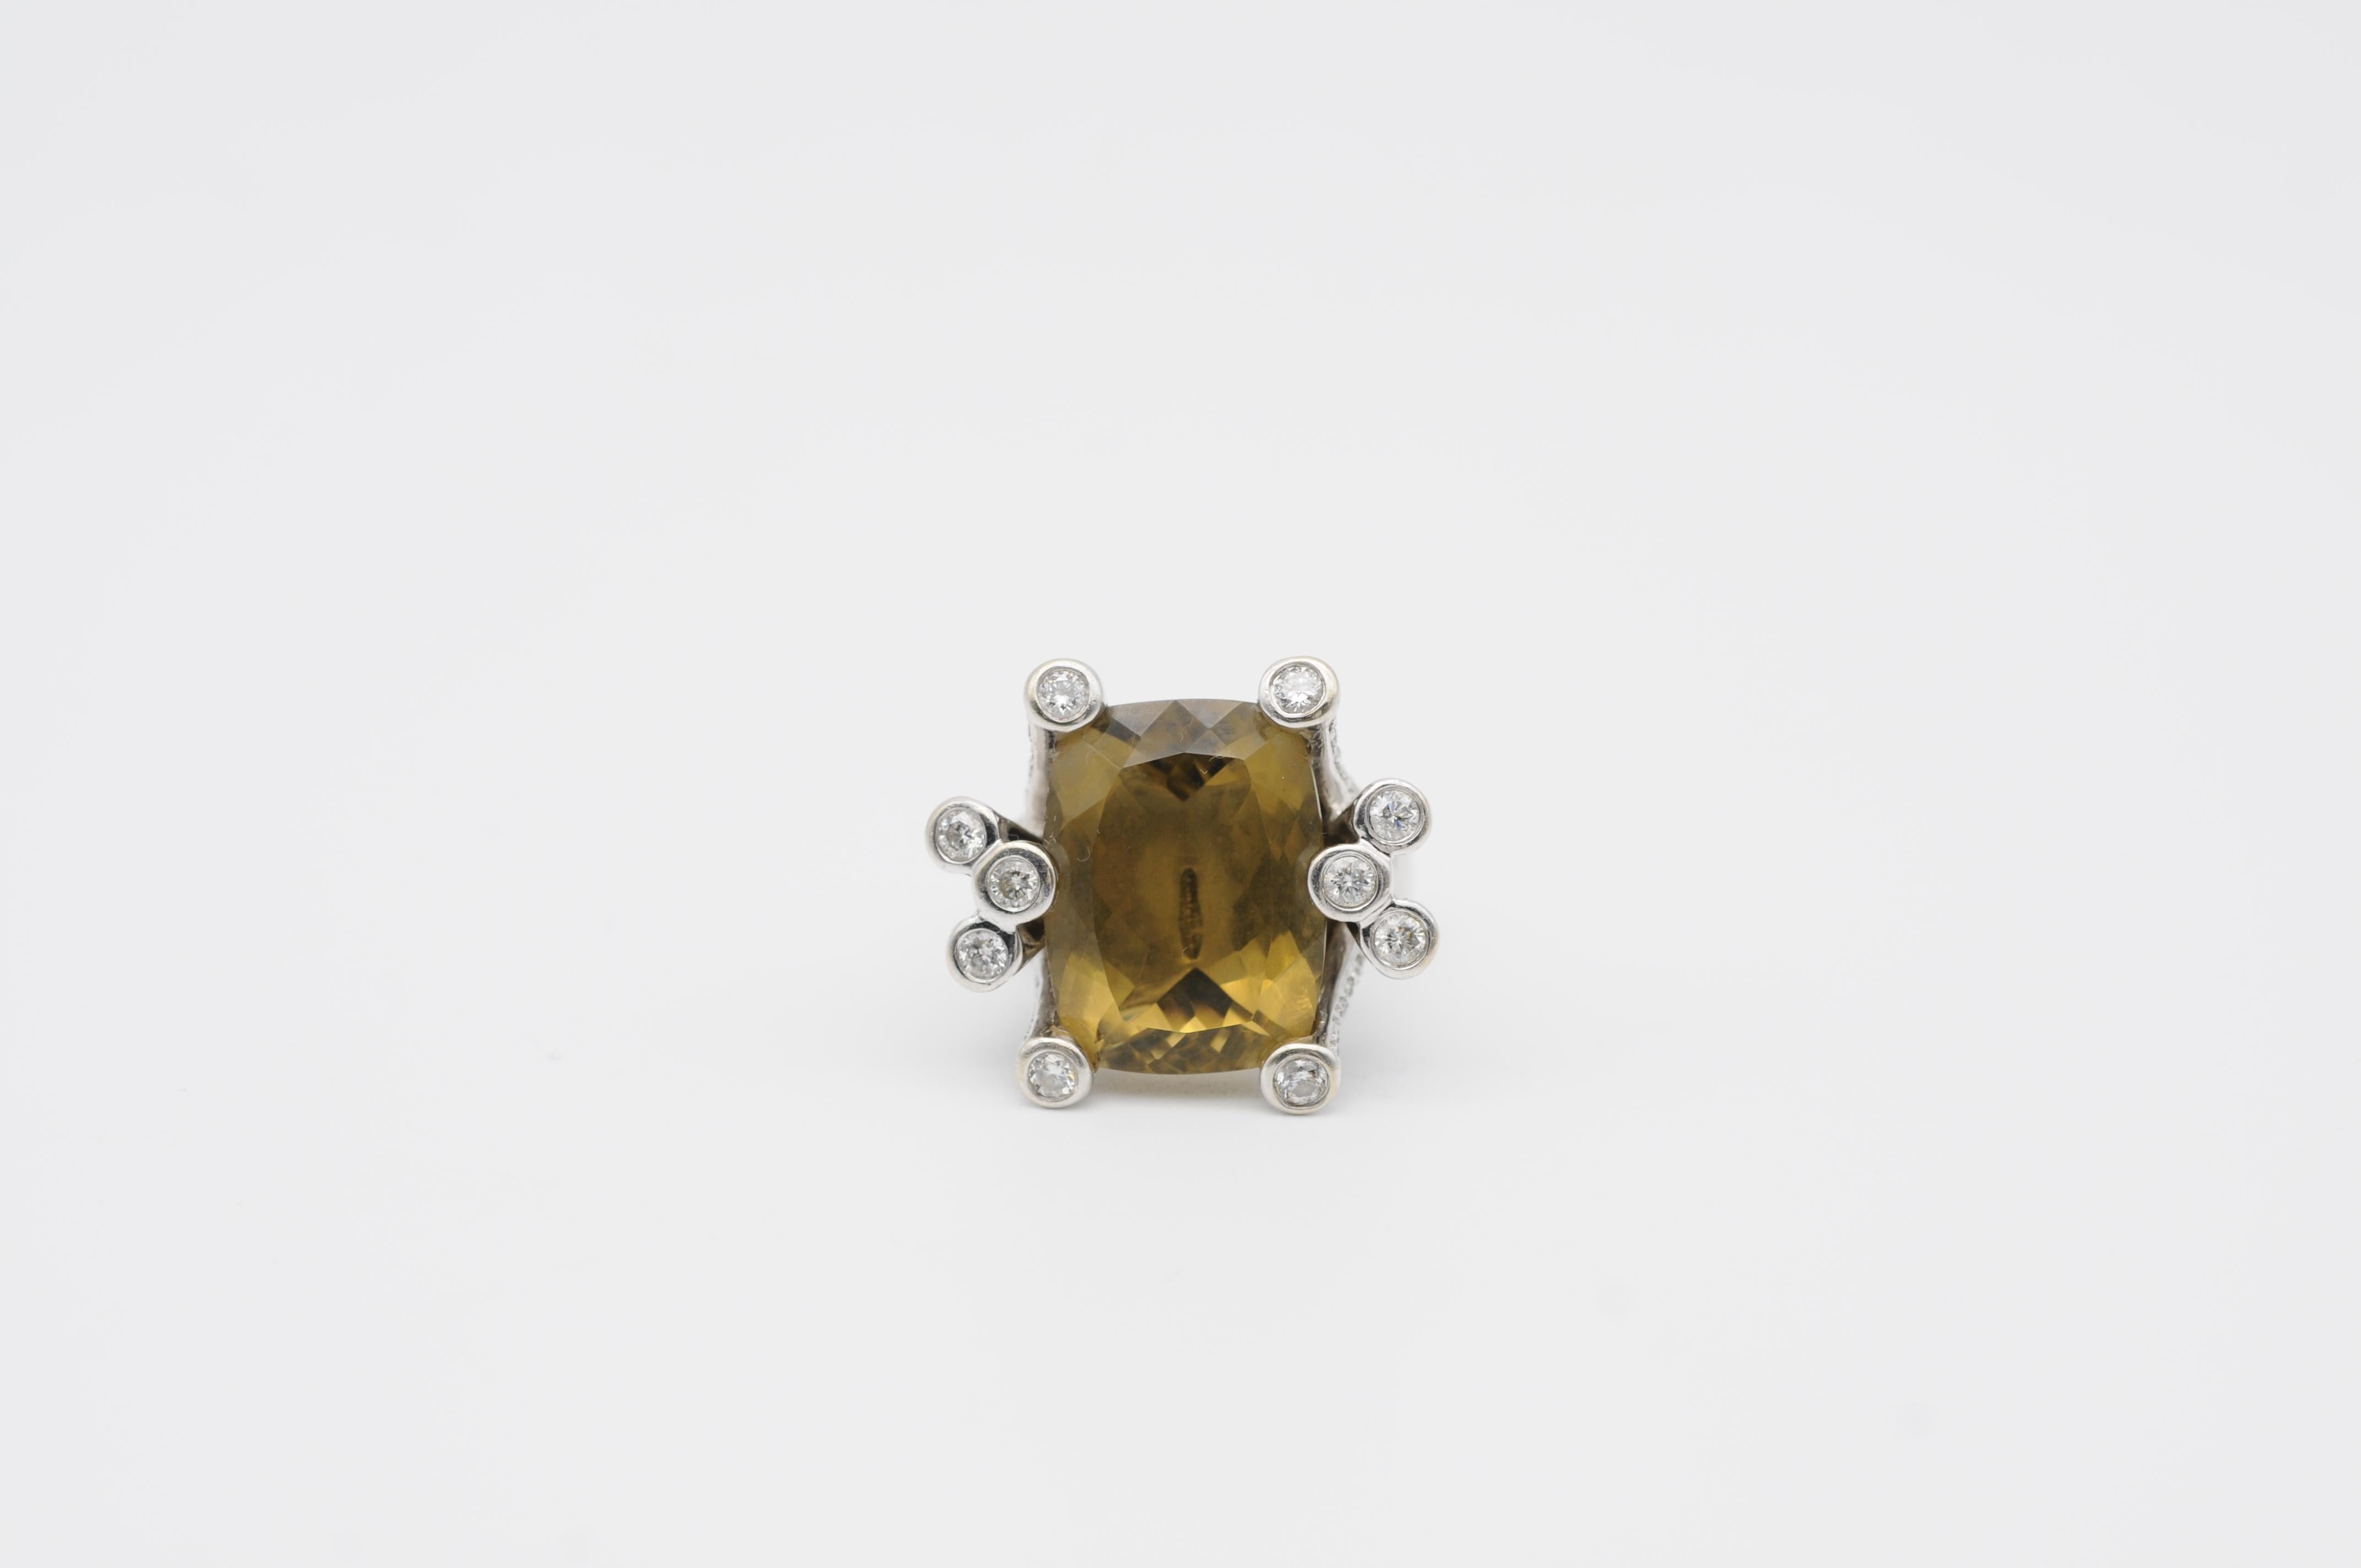 Der einzigartige Ring aus Weißgold mit braunem Topas und Brillianten - ein wahres Meisterwerk an Eleganz, Luxus und Raffinesse. Dieser atemberaubende Ring zeigt einen großen Brauntopas im Smaragdschliff, der in 14-karätigem Weißgold gefasst ist und